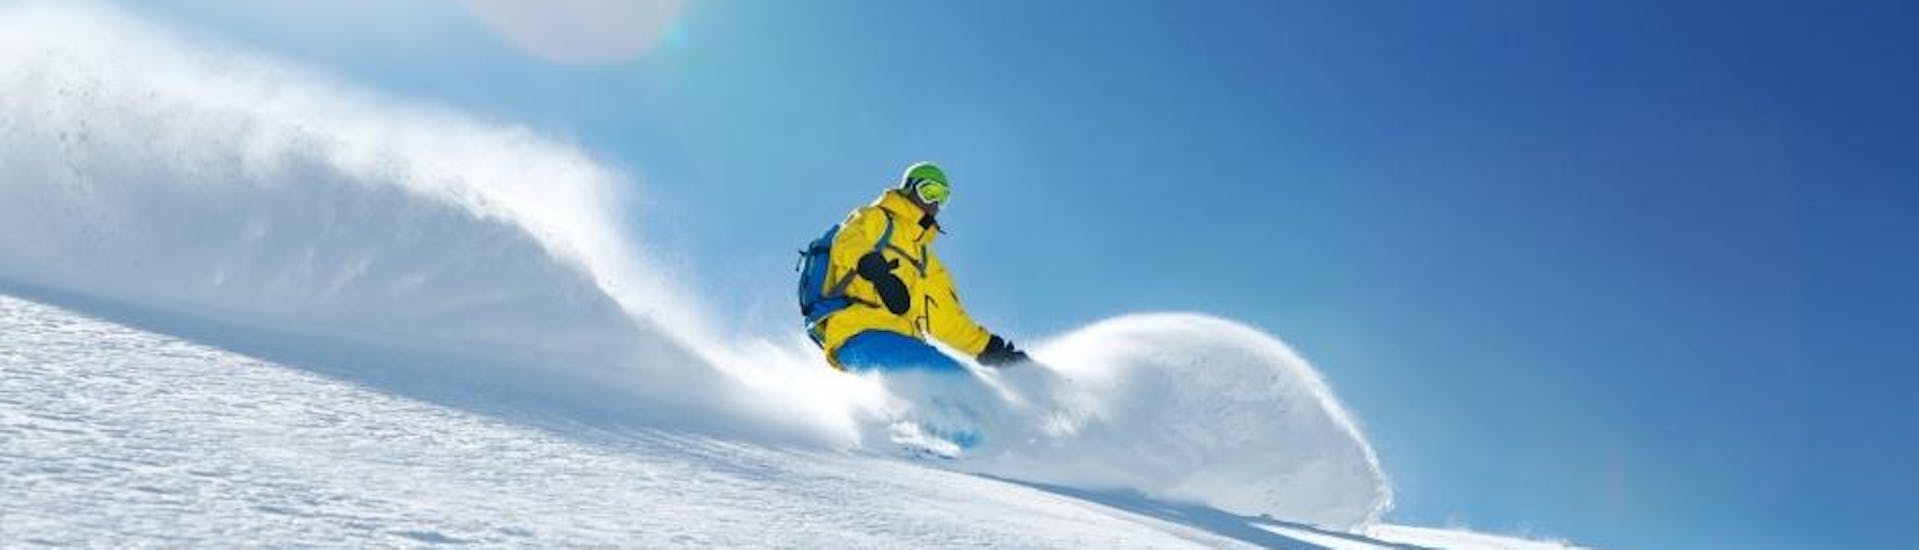 Snowboardkurs für Erwachsene + Verleih Package für alle Levels mit Skischule Toni Gruber.